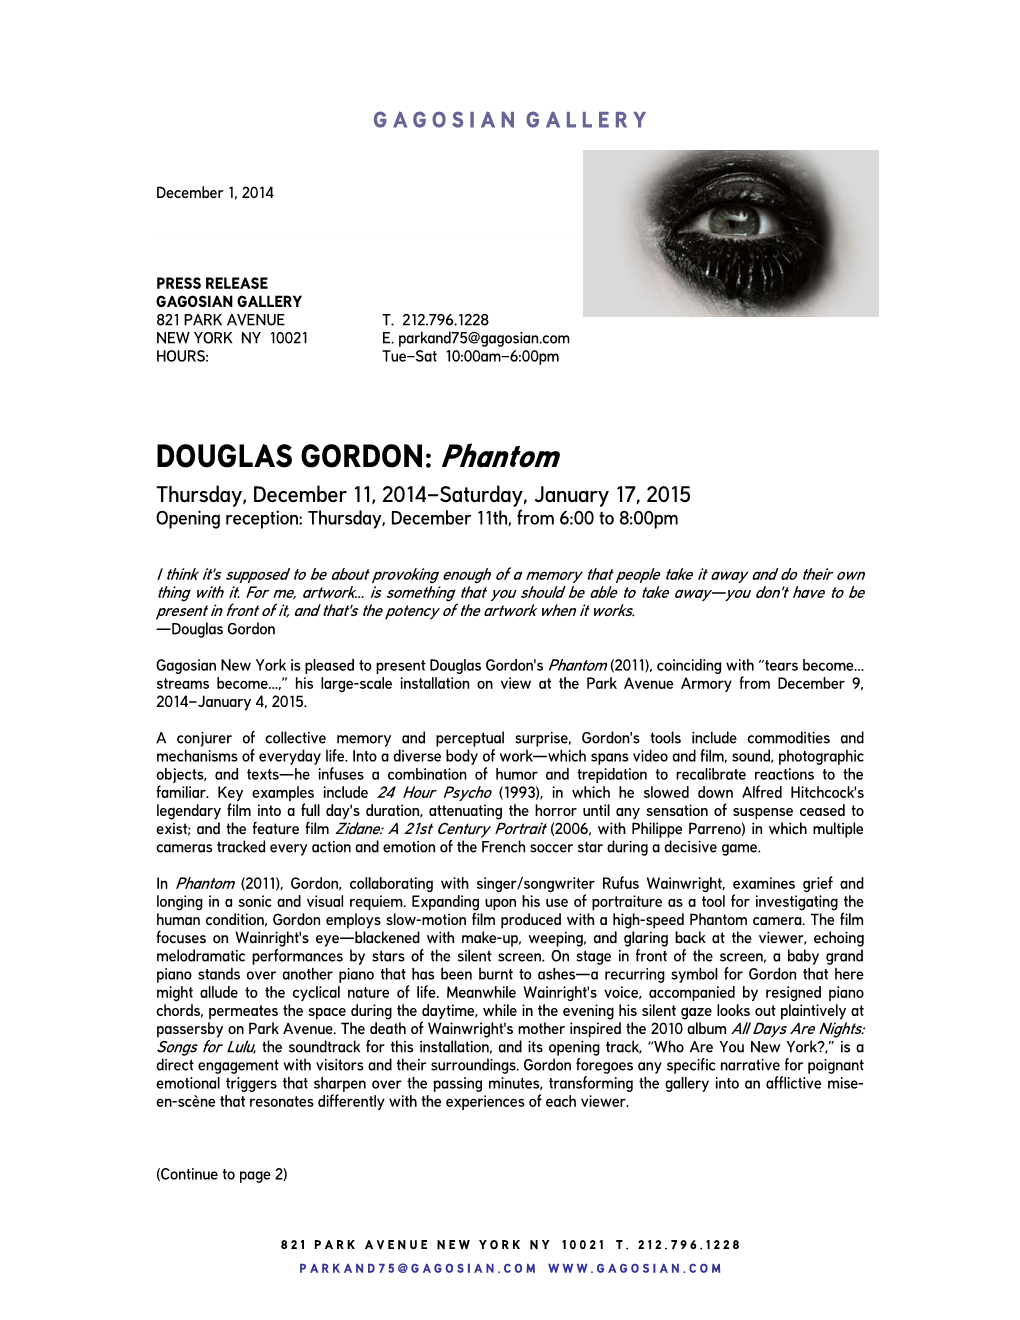 DOUGLAS GORDON: Phantom